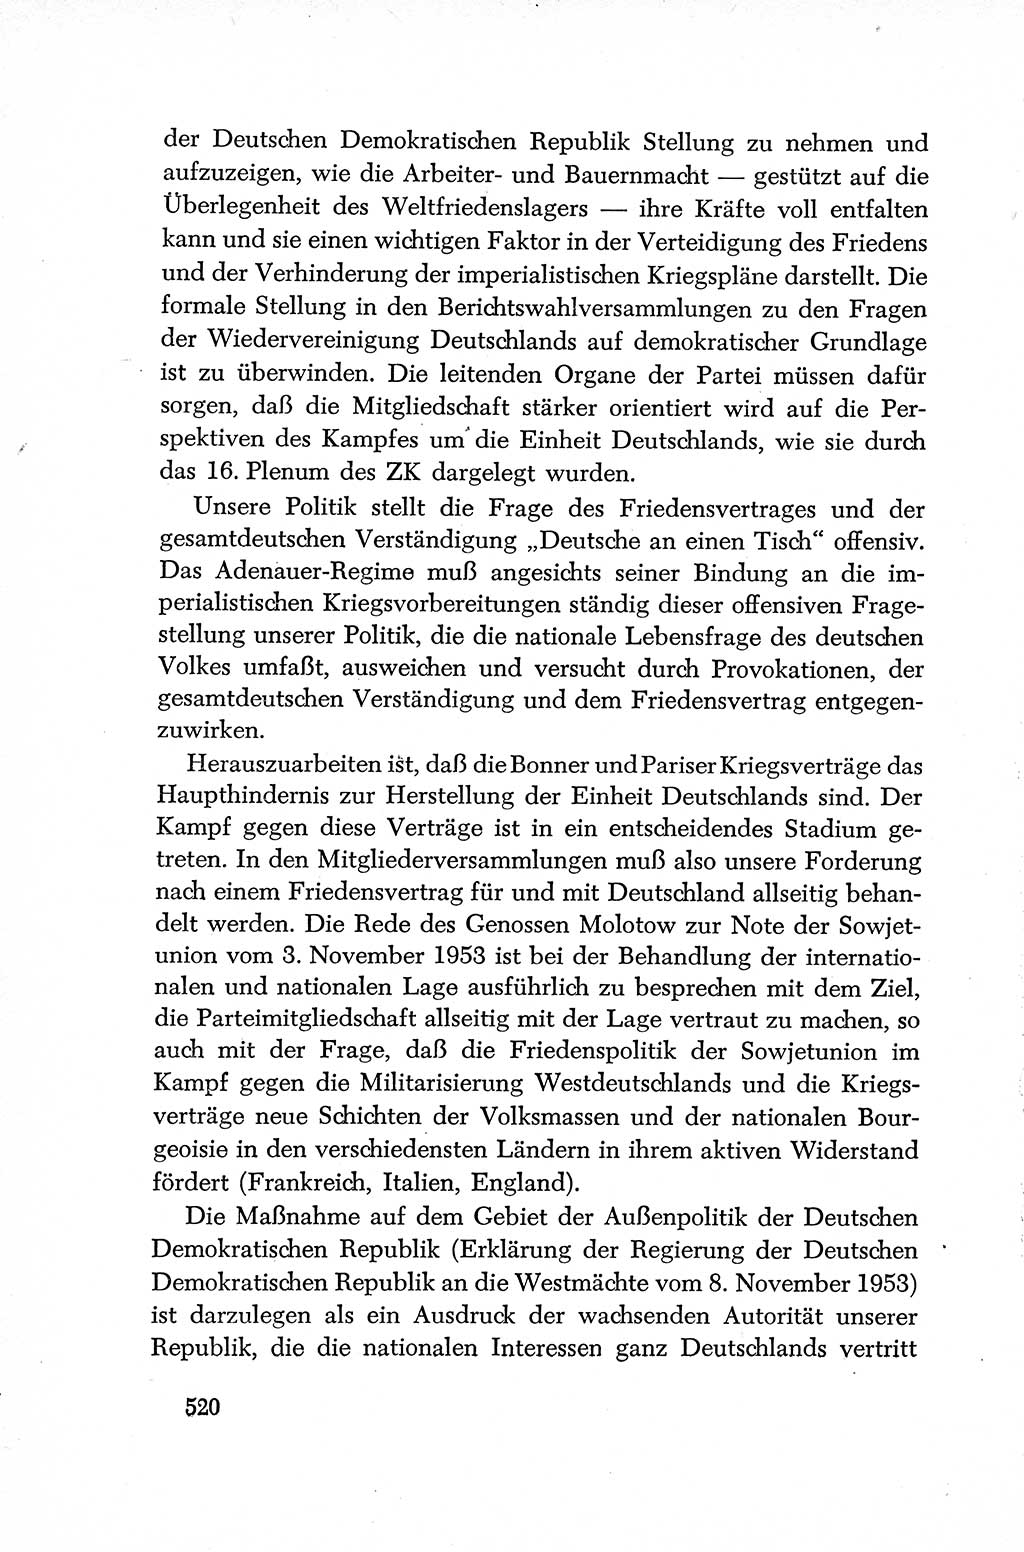 Dokumente der Sozialistischen Einheitspartei Deutschlands (SED) [Deutsche Demokratische Republik (DDR)] 1952-1953, Seite 520 (Dok. SED DDR 1952-1953, S. 520)